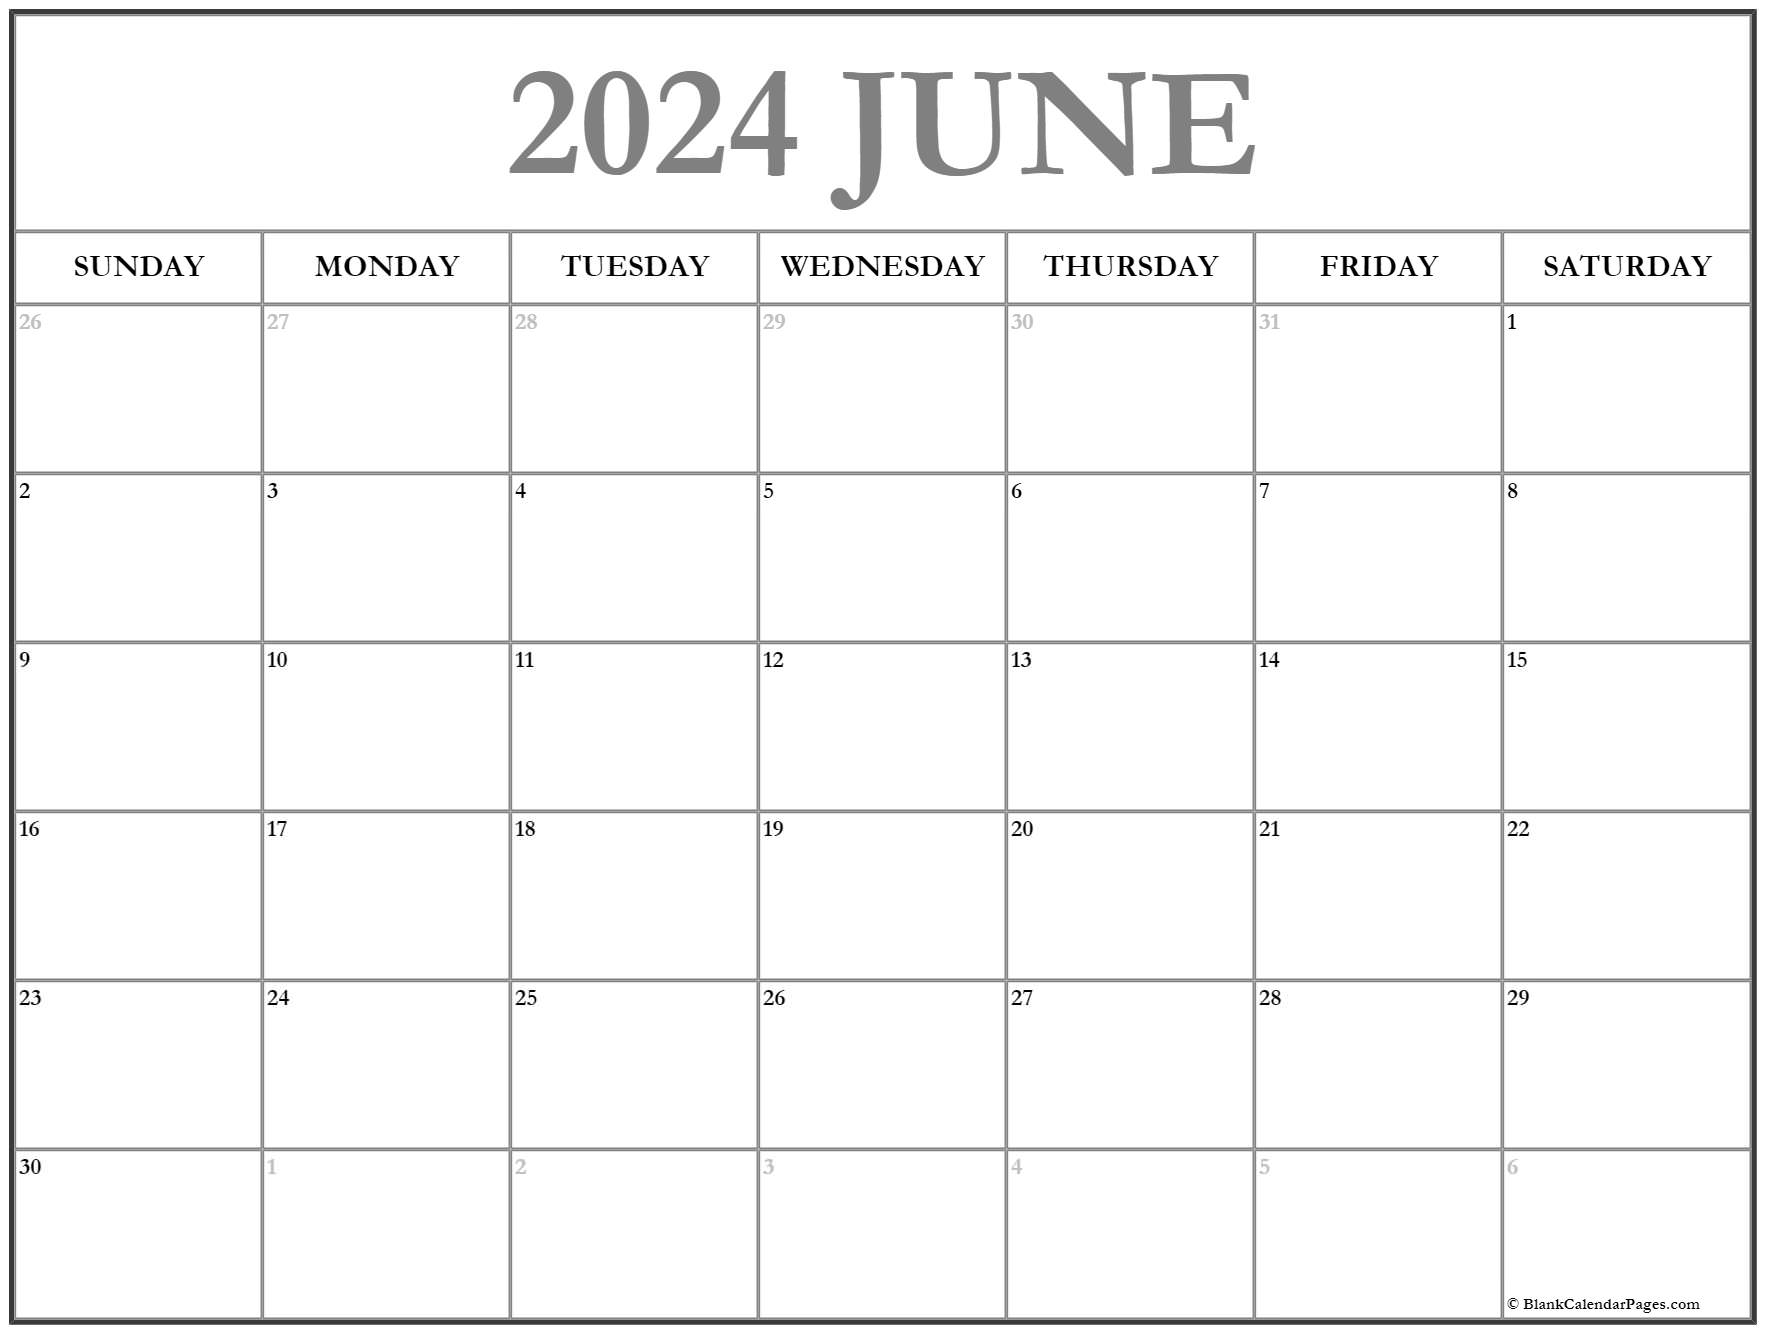 June 2023 Calendar Free Printable Calendar June 2023 Calendar Free Printable Calendar Free 